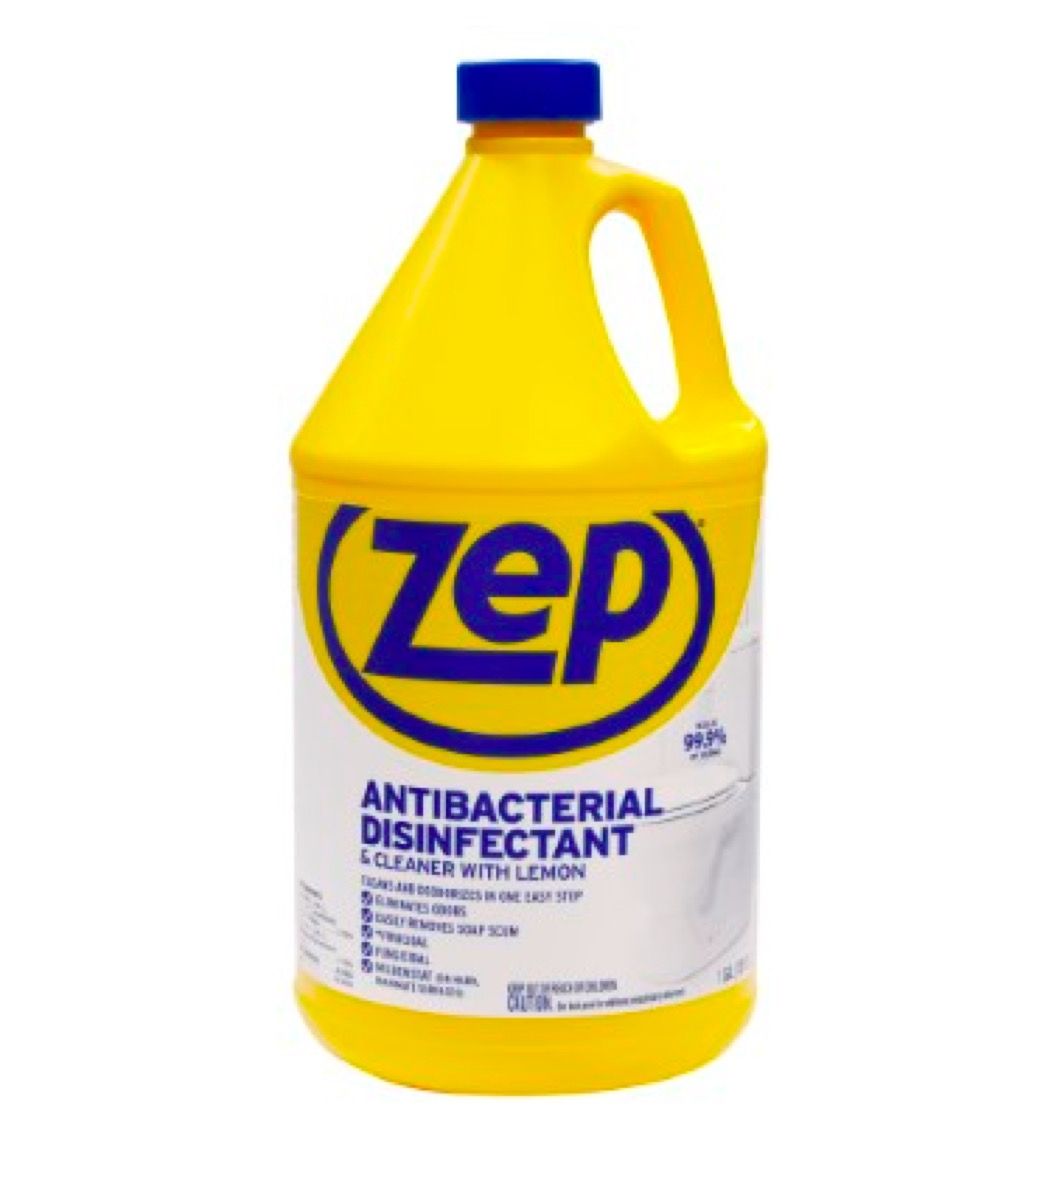 Zep Antibakteria & Pembersih dengan Lemon